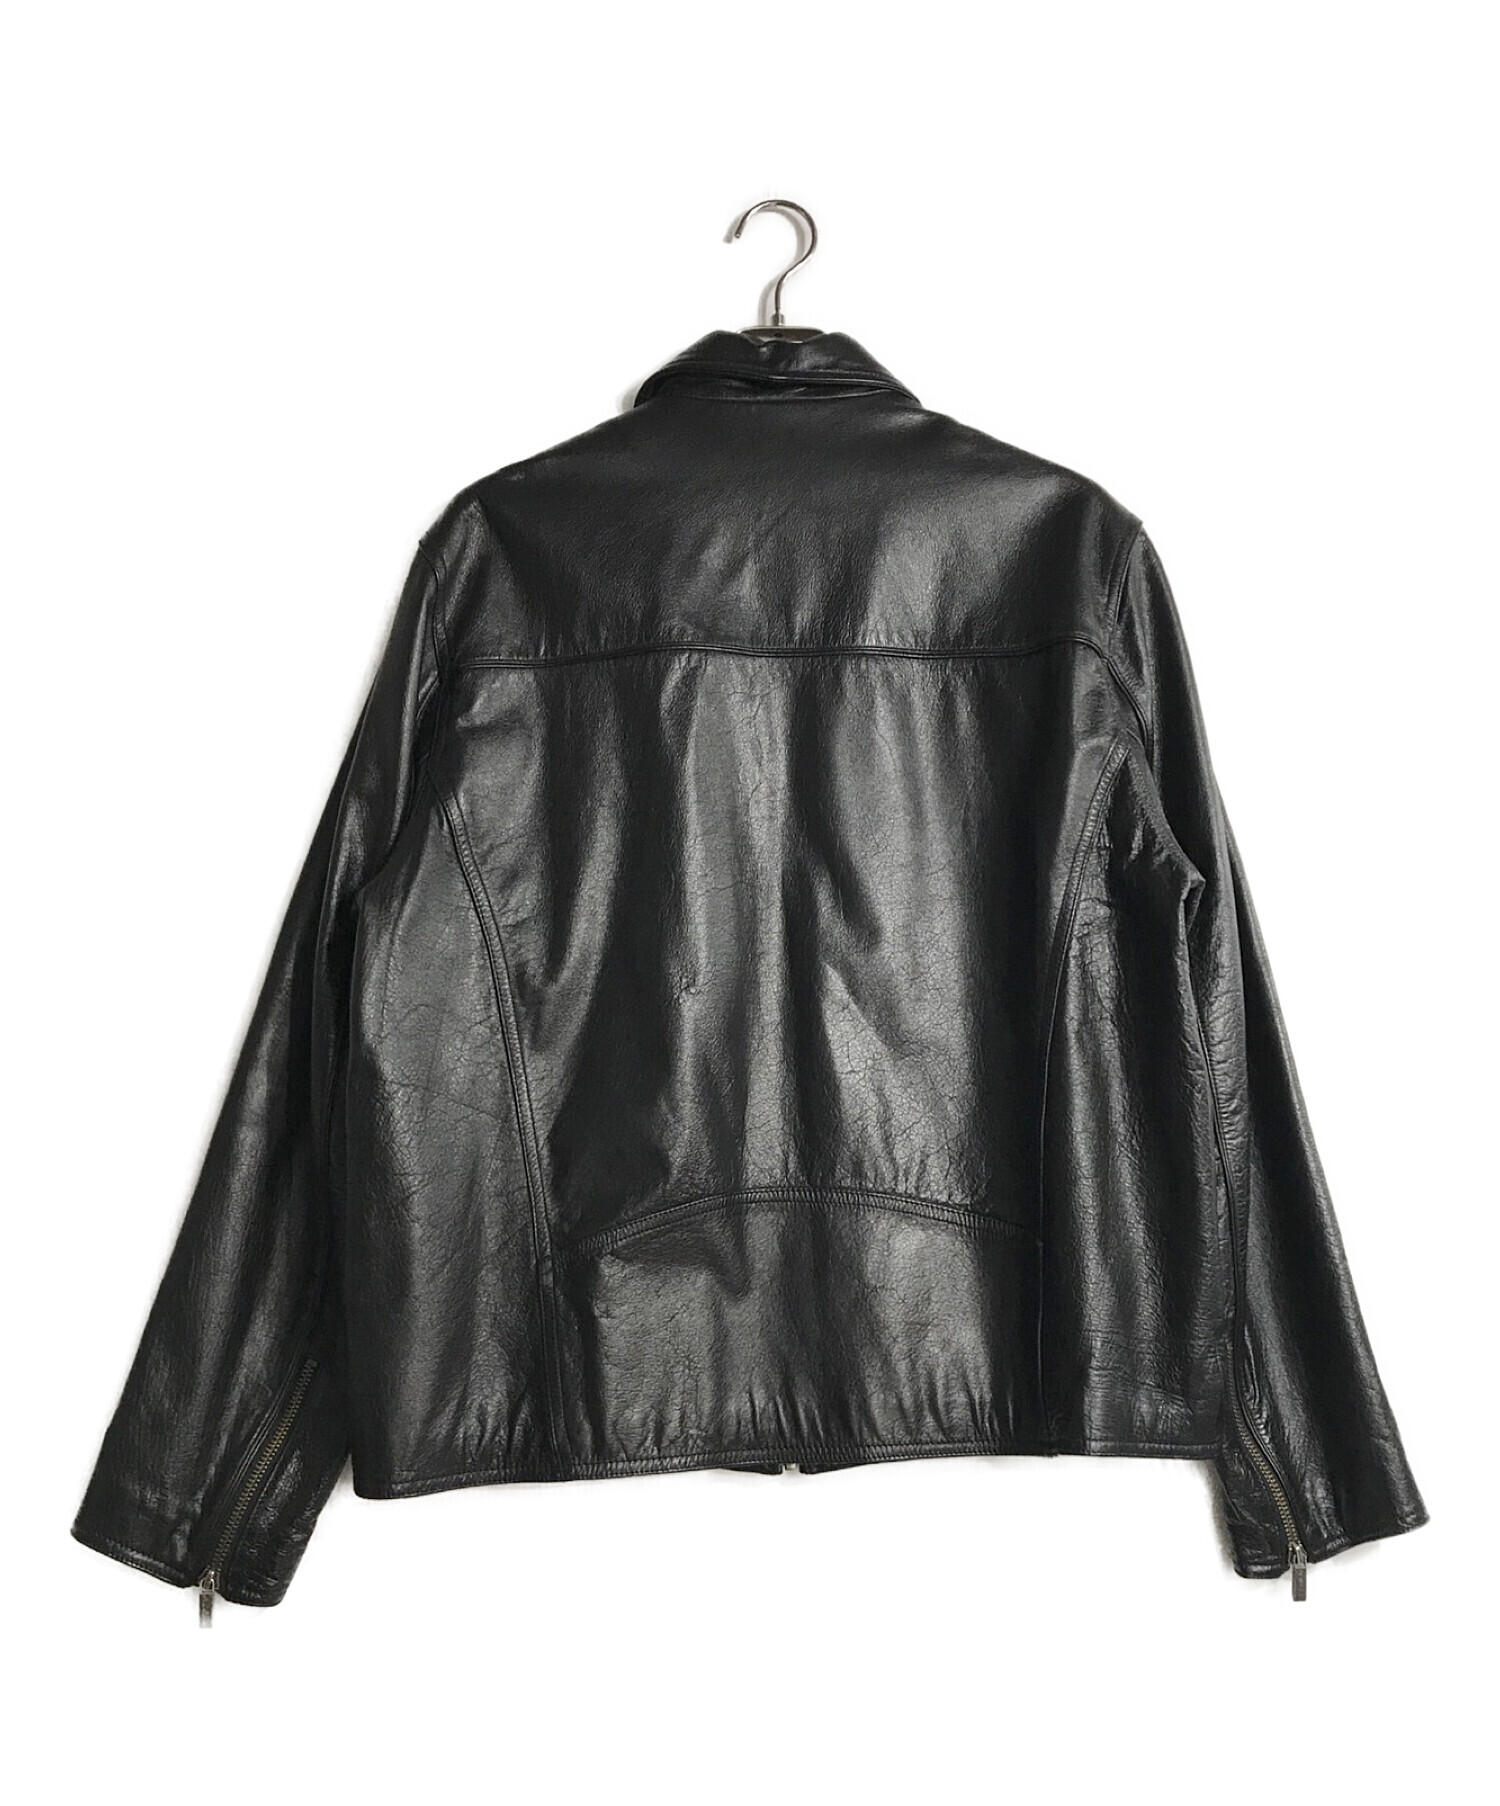 wilsons leather (ウィルソンズレザー) レザージャケット ブラック サイズ:L